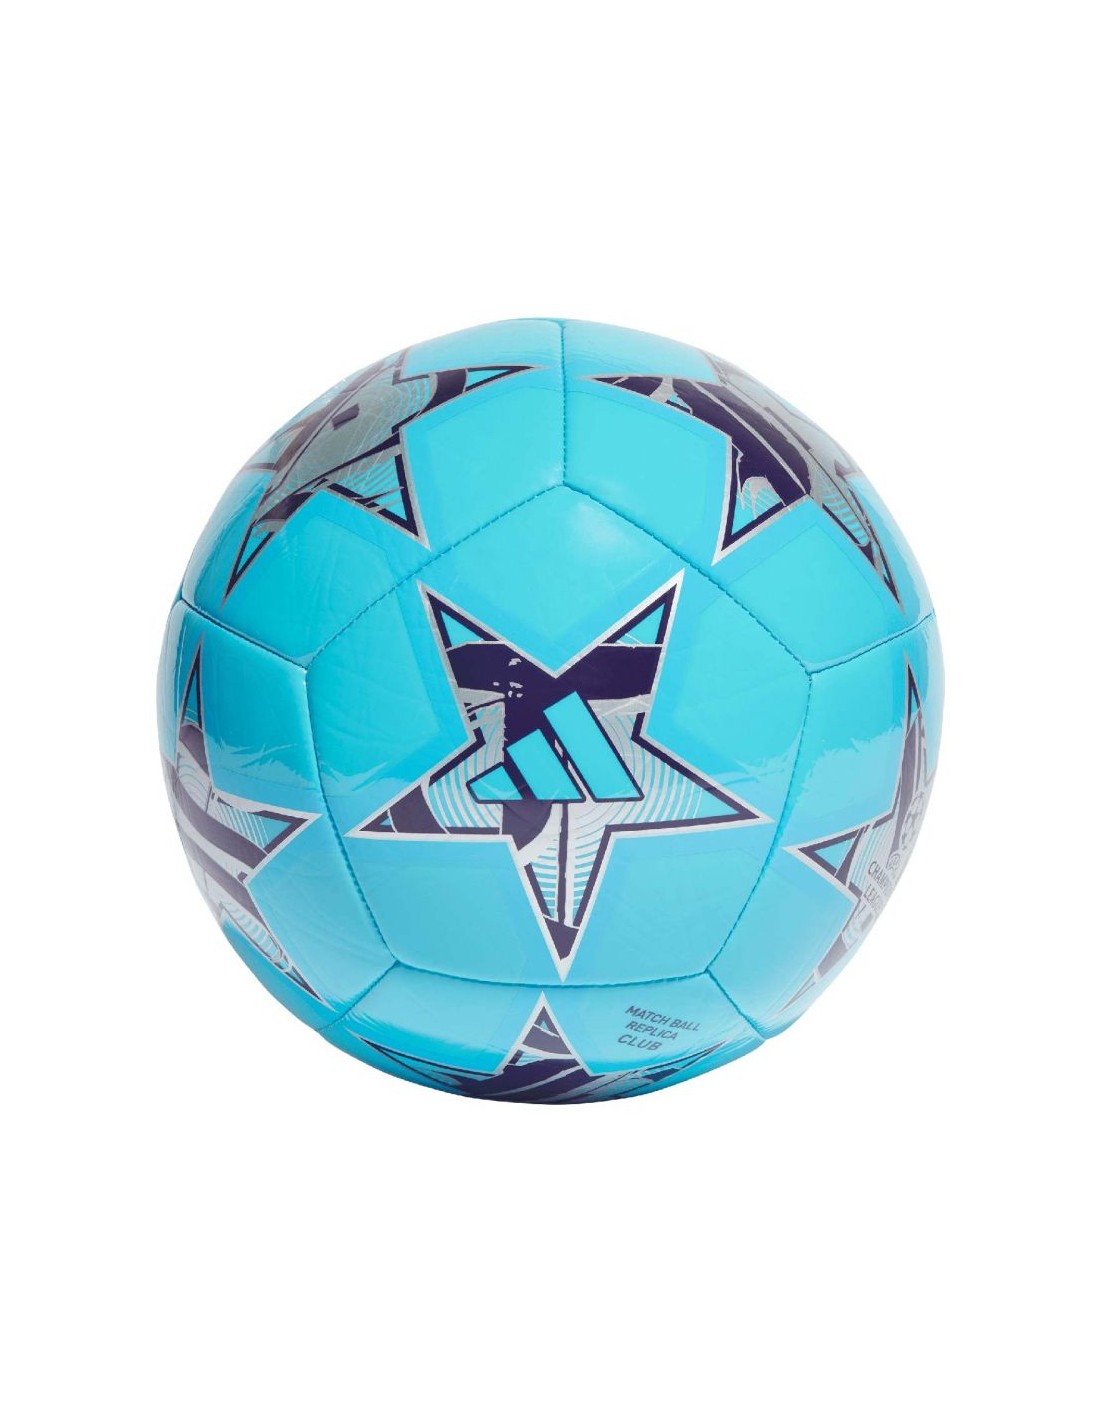 Uefa champions league ballon de football - 400g